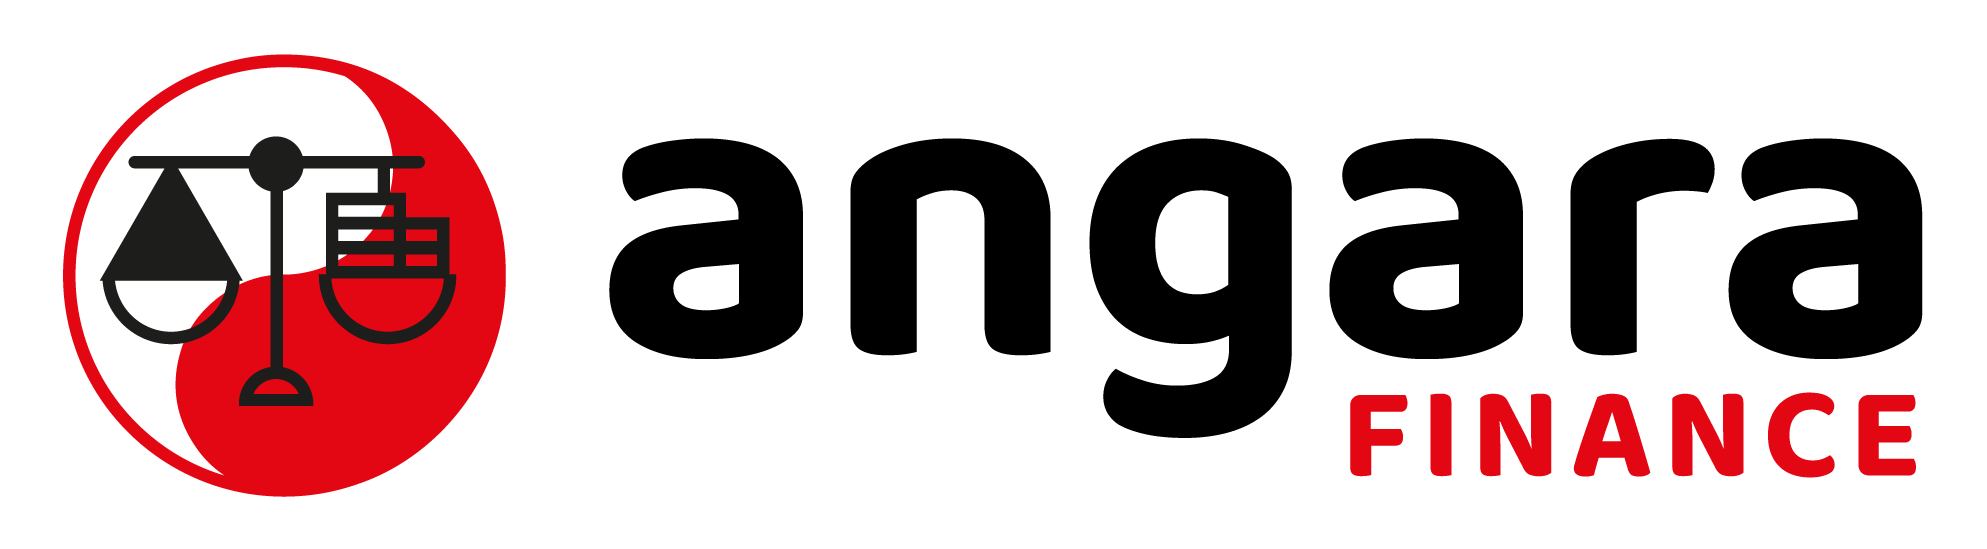 angara finance logo